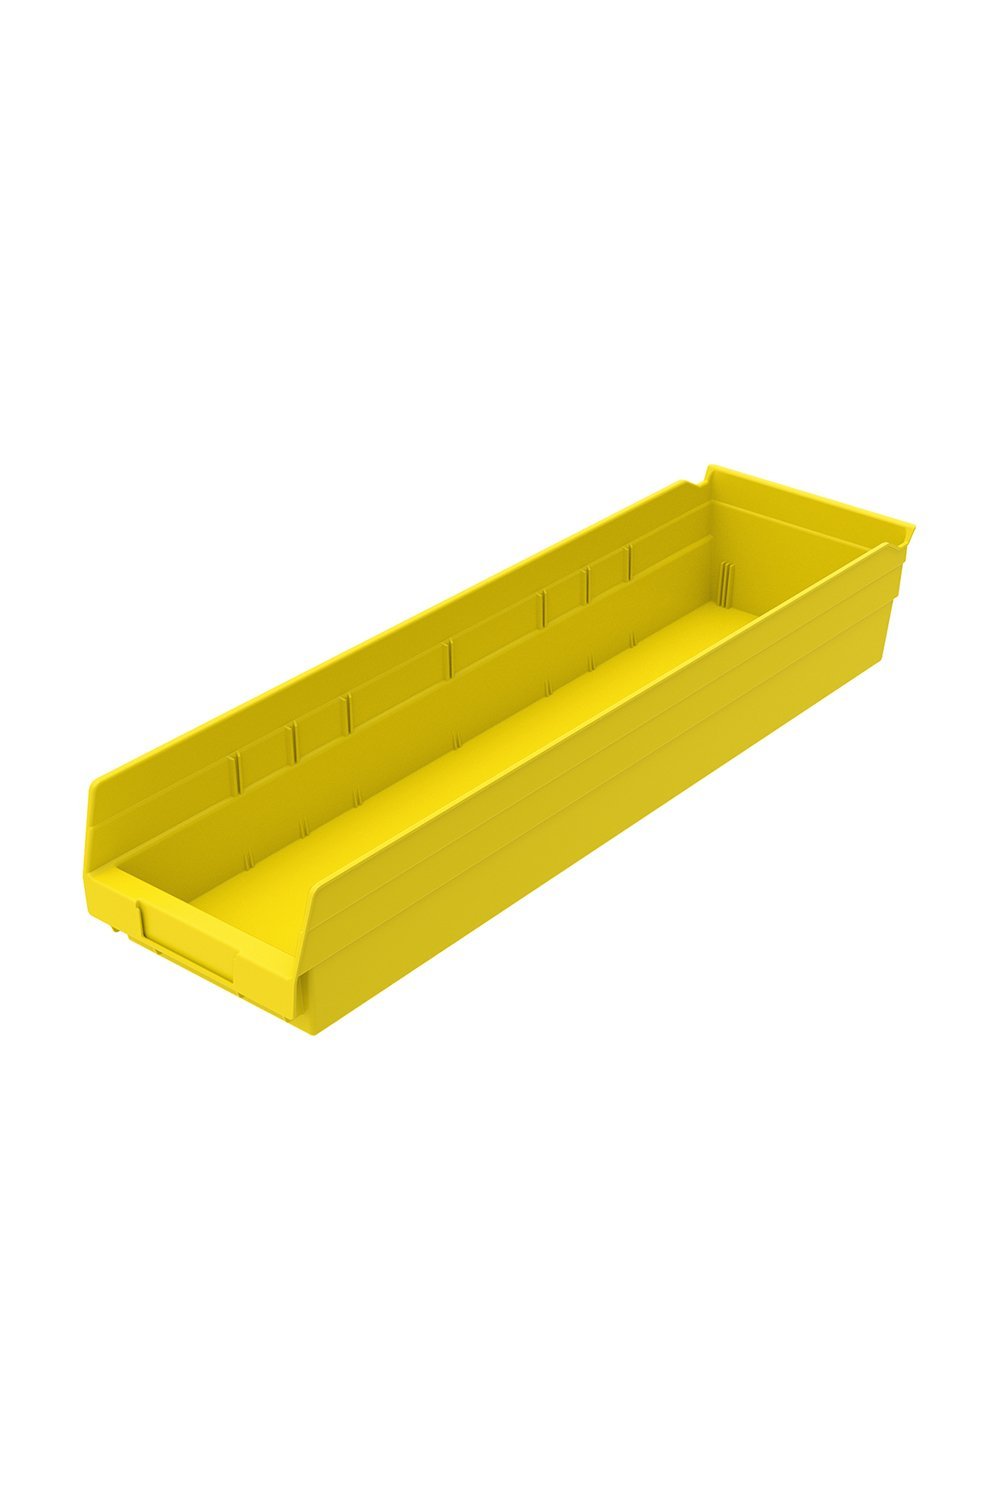 Shelf Bin for 24"D Shelves Bins & Containers Acart 23-5/8'' x 6-5/8'' x 4'' Yellow 